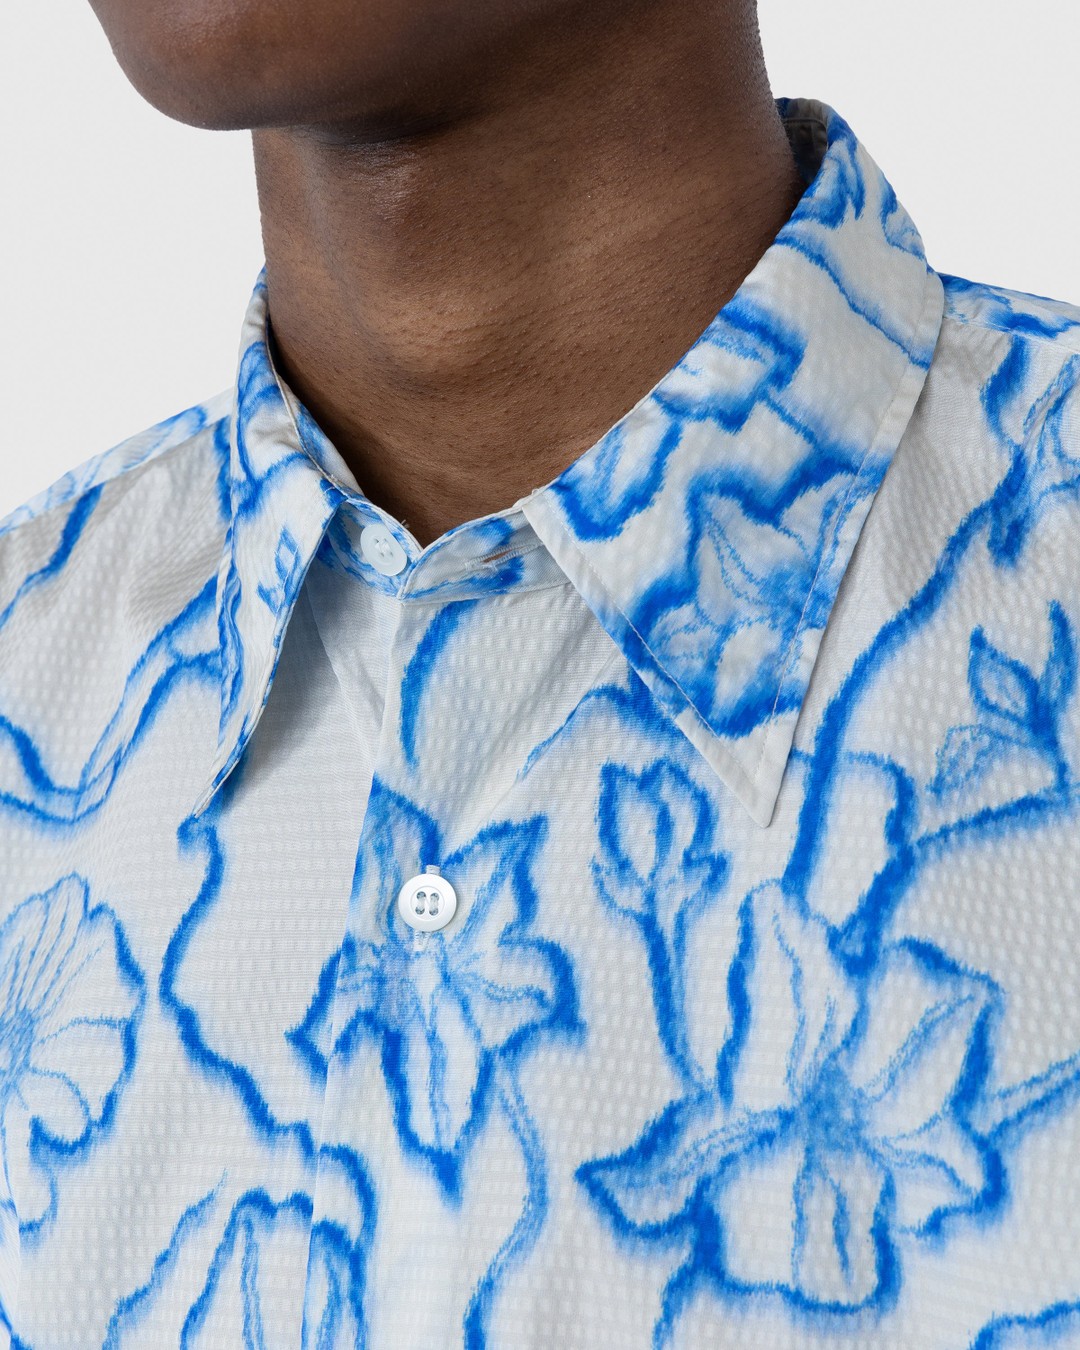 Dries van Noten – Cassidye Shirt Blue - Shortsleeve Shirts - Blue - Image 6